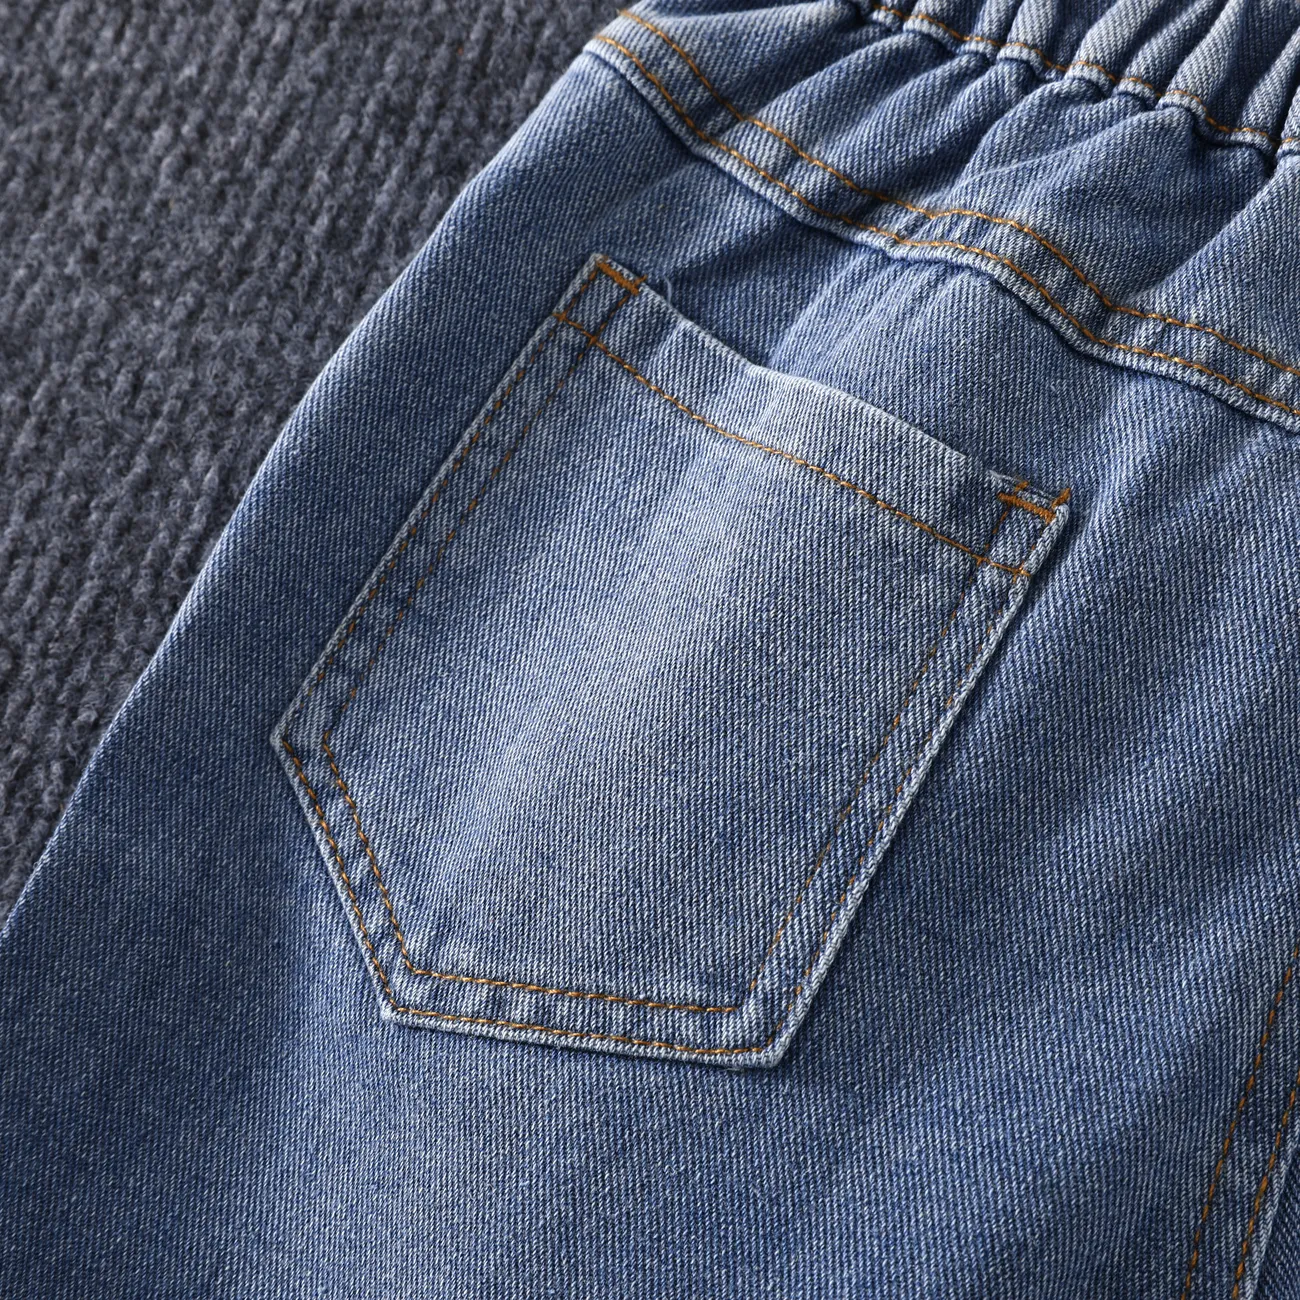 Kinder Jungen Unifarben Jeans blau big image 1